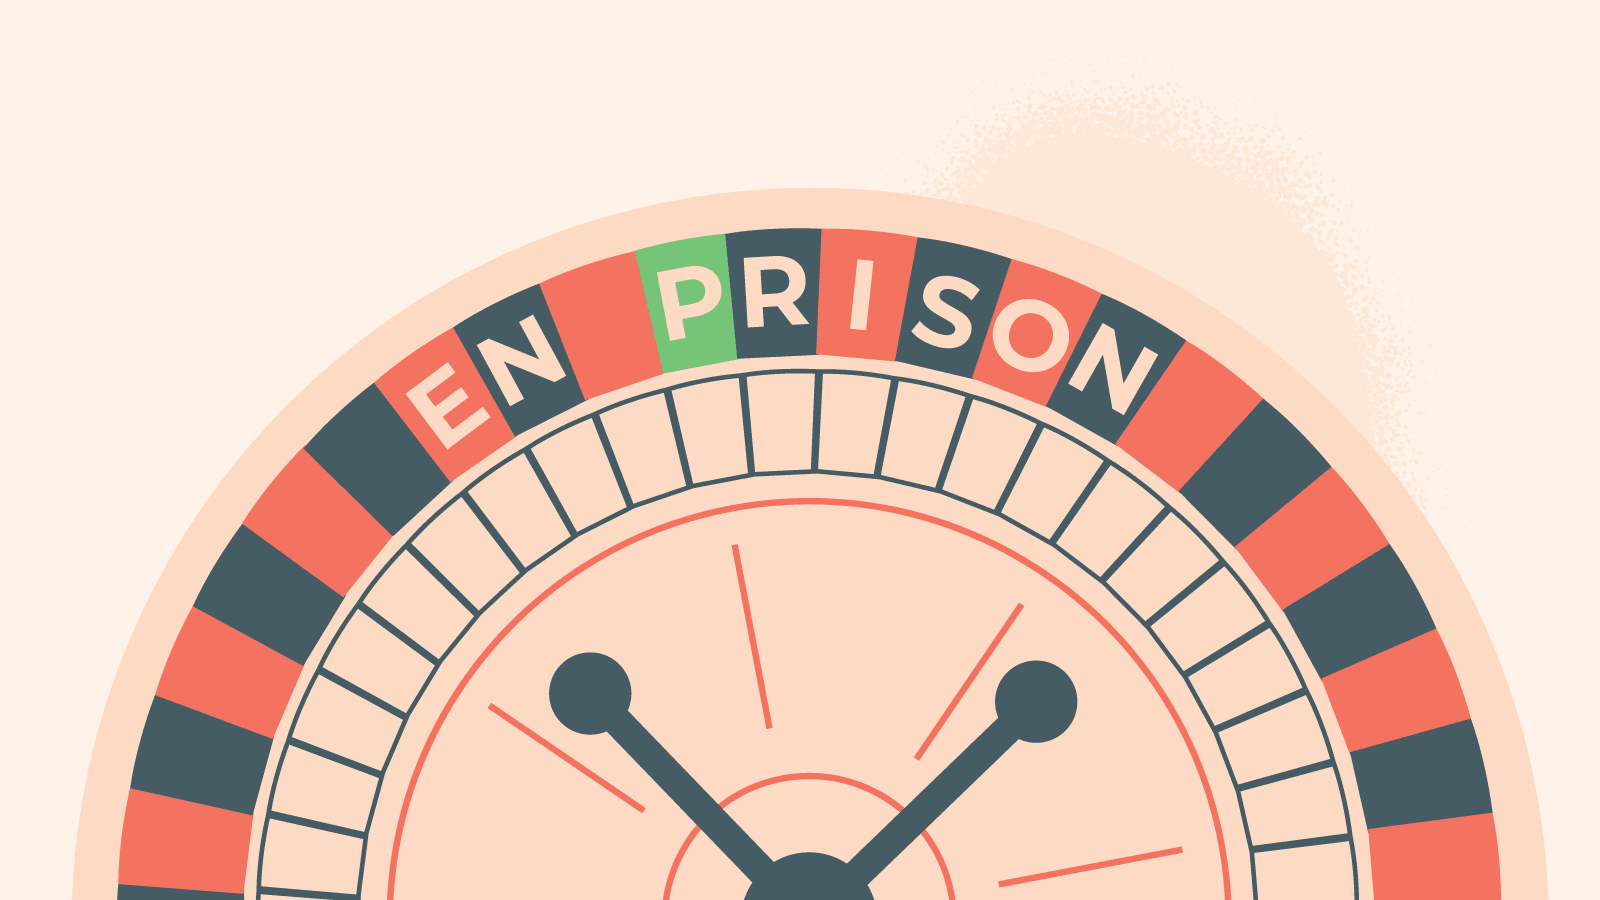 Regula „En prison” - ruletă europeană